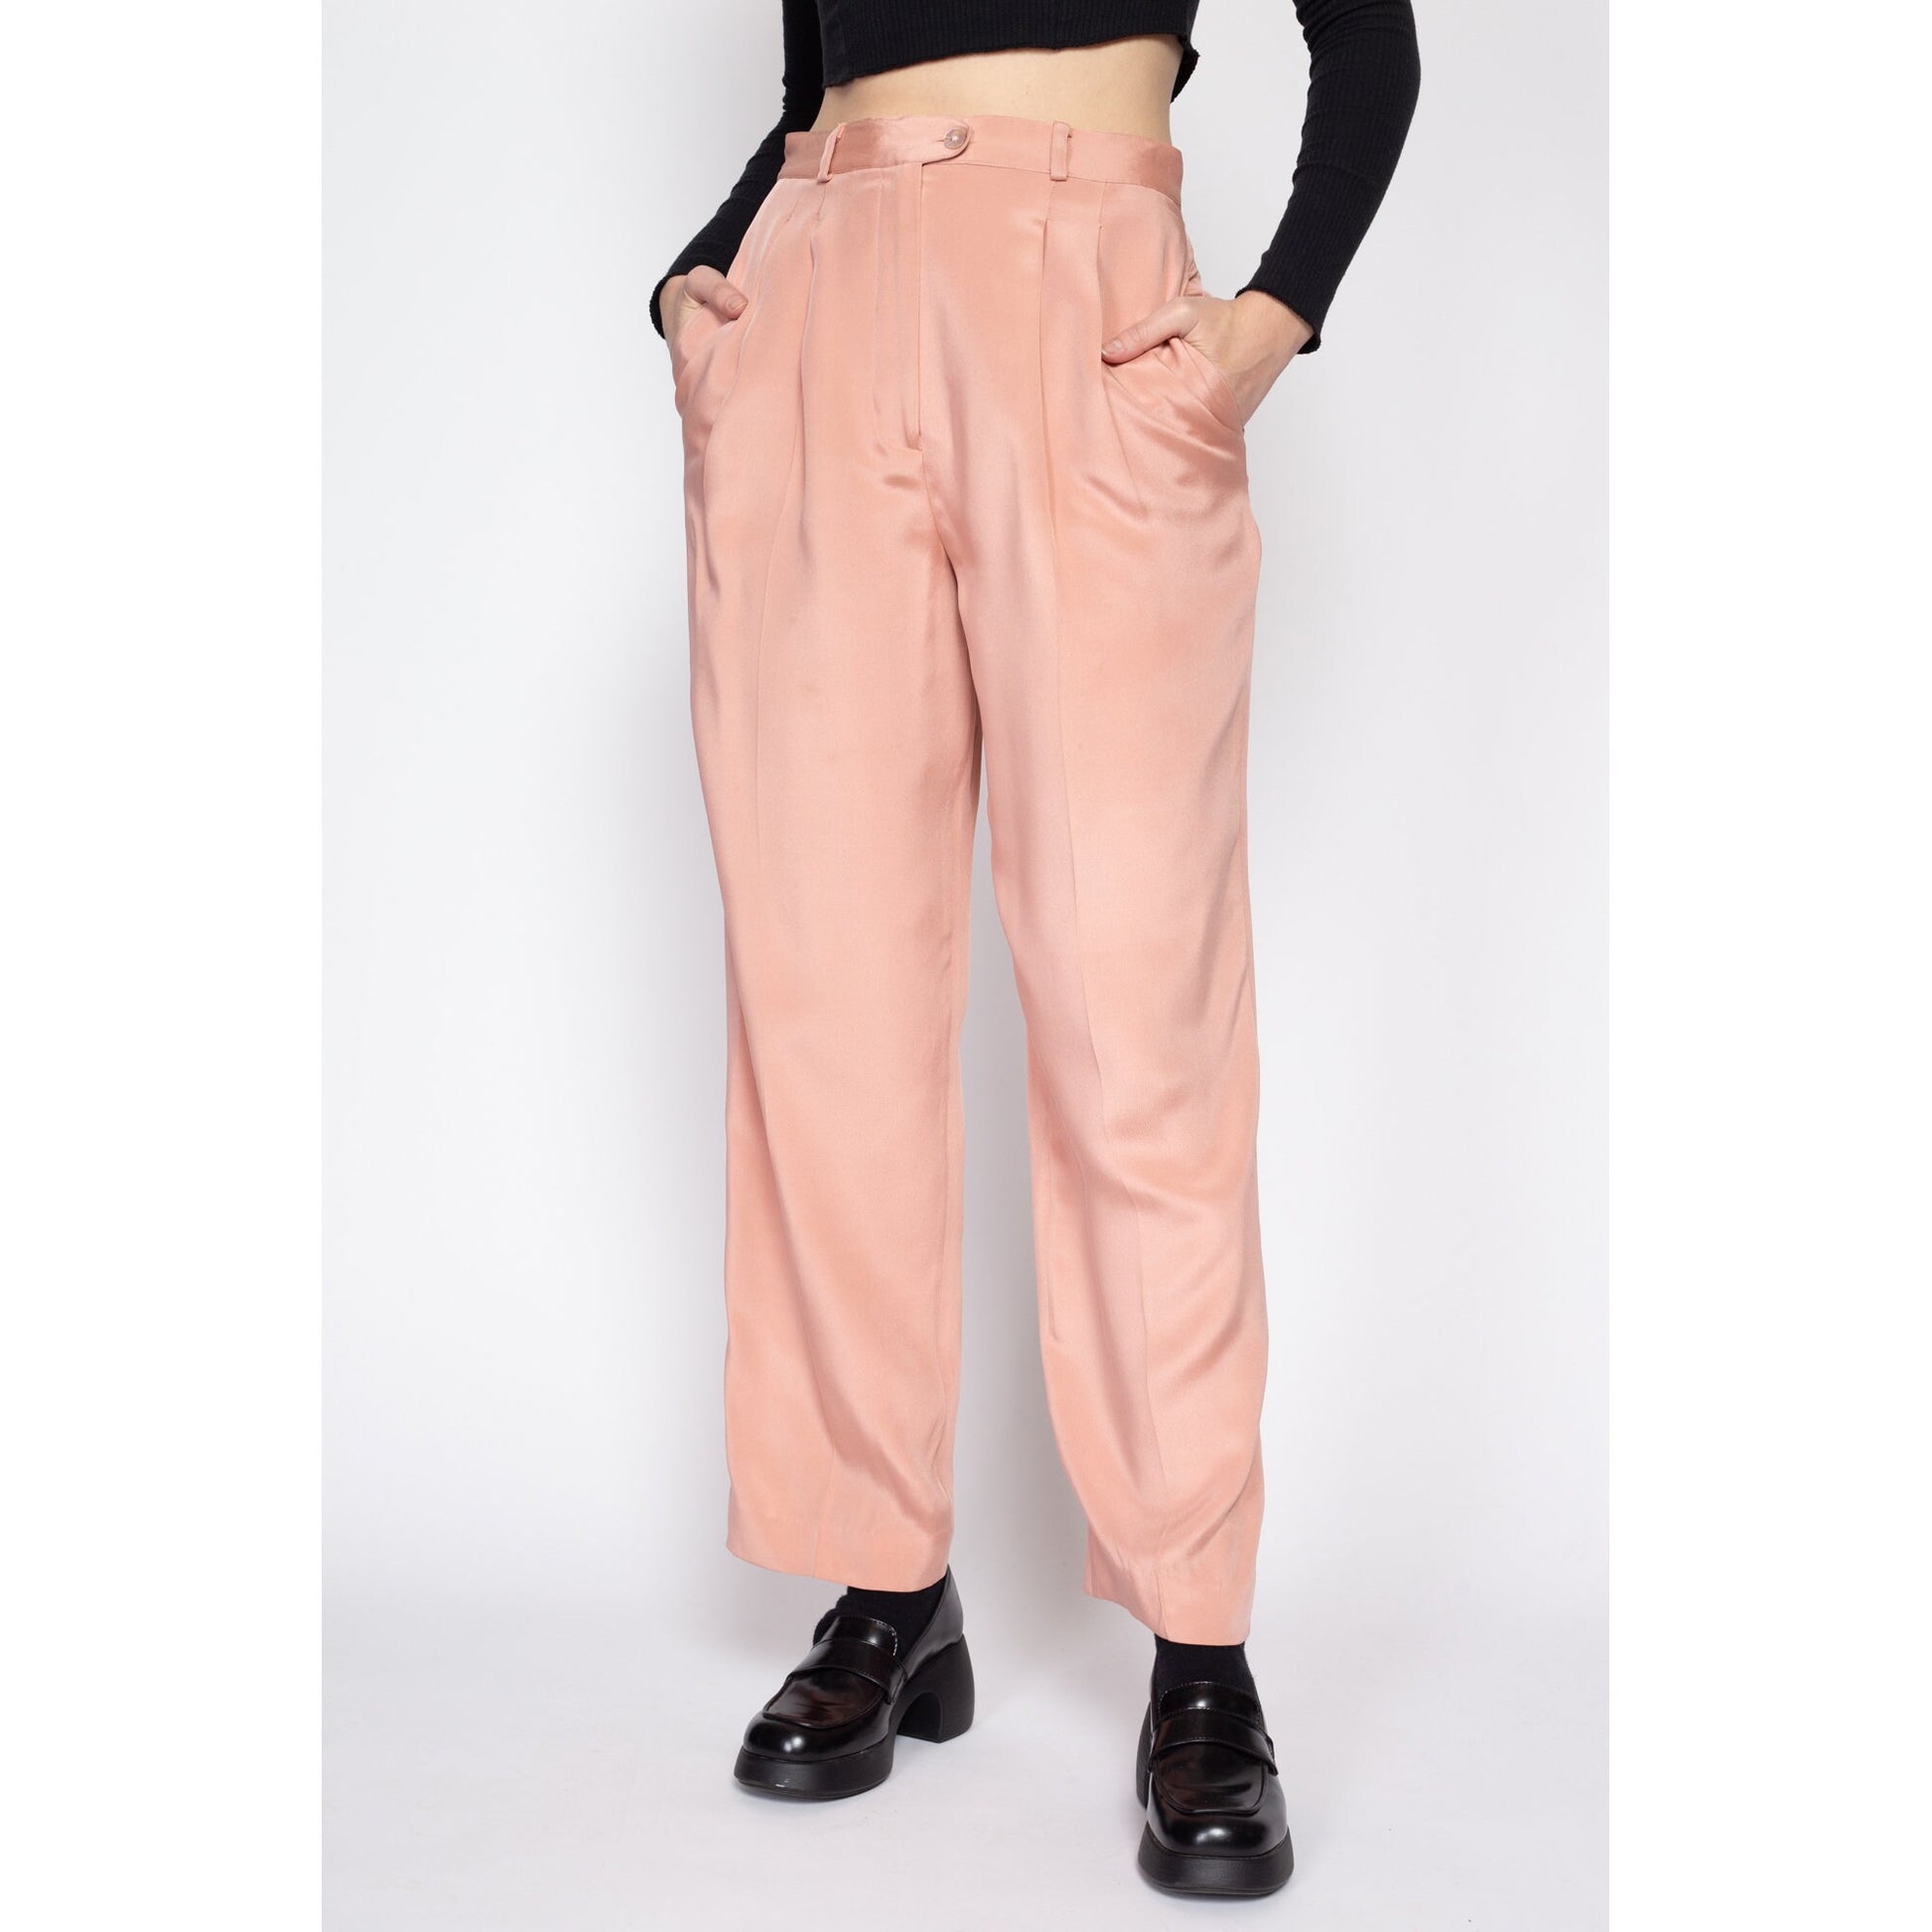 Medium 80s Peach Silk High Waisted Trousers 28 – Flying Apple Vintage